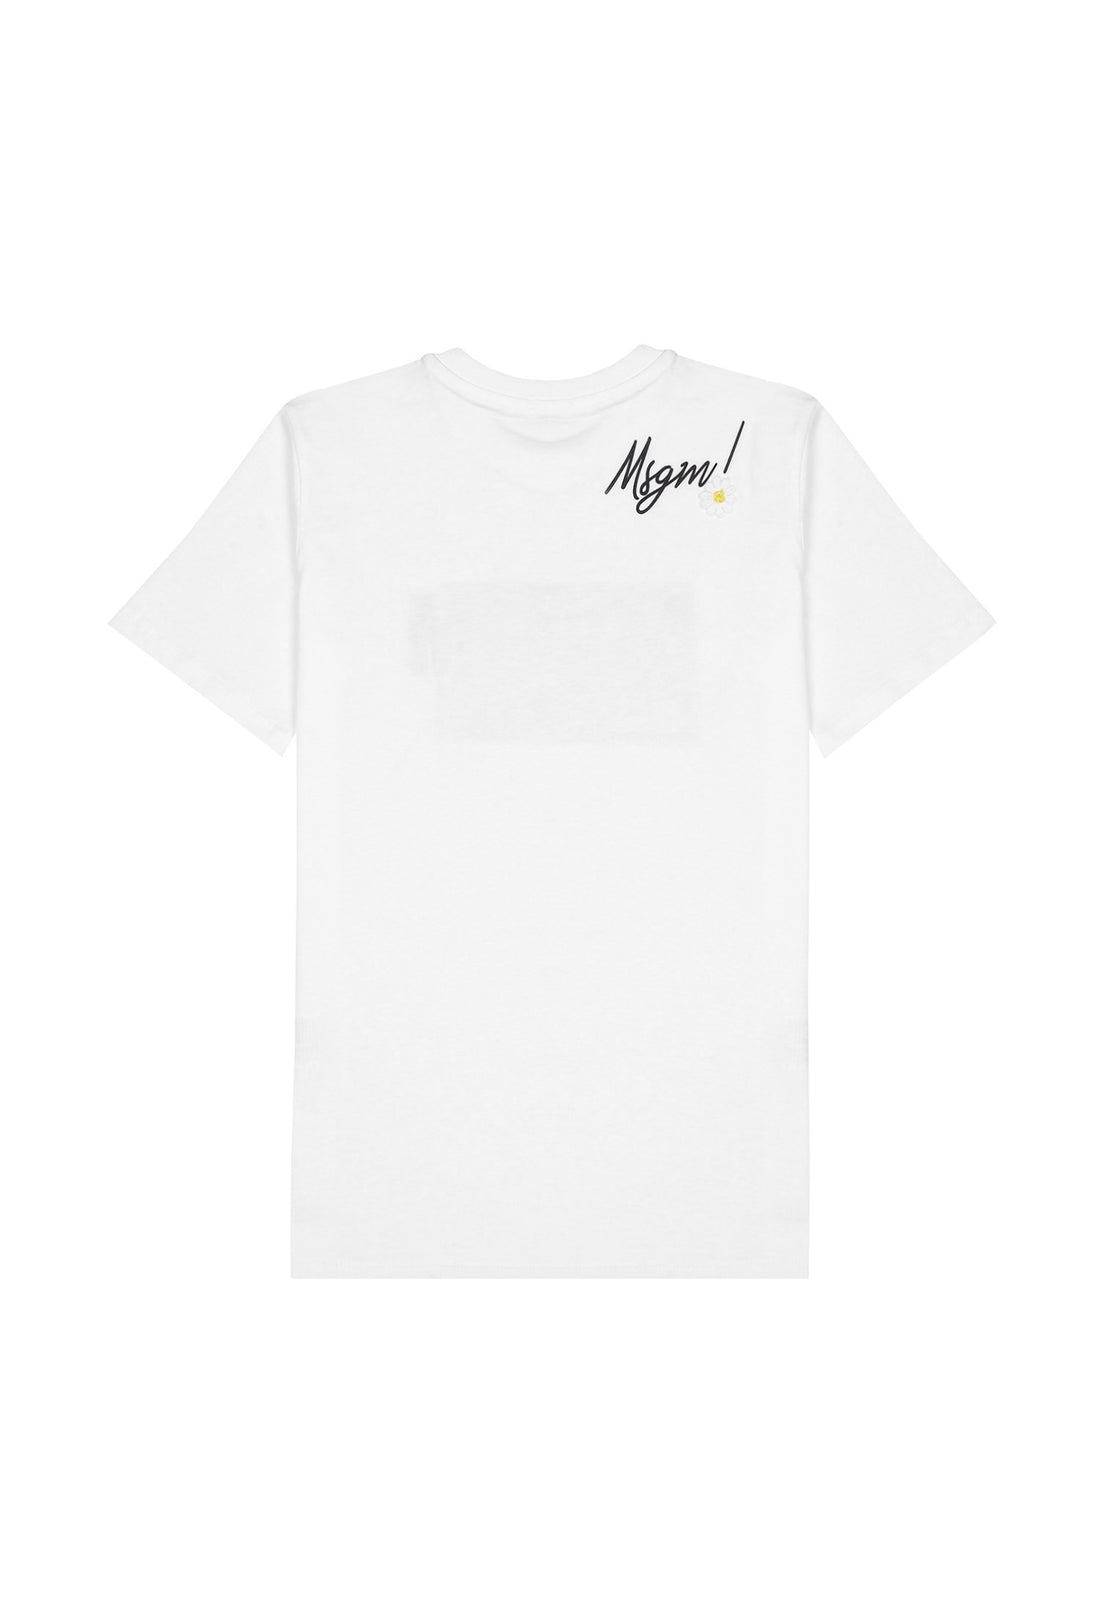 T-shirt materiał biały łączony MSGM 123 9476 123/91c